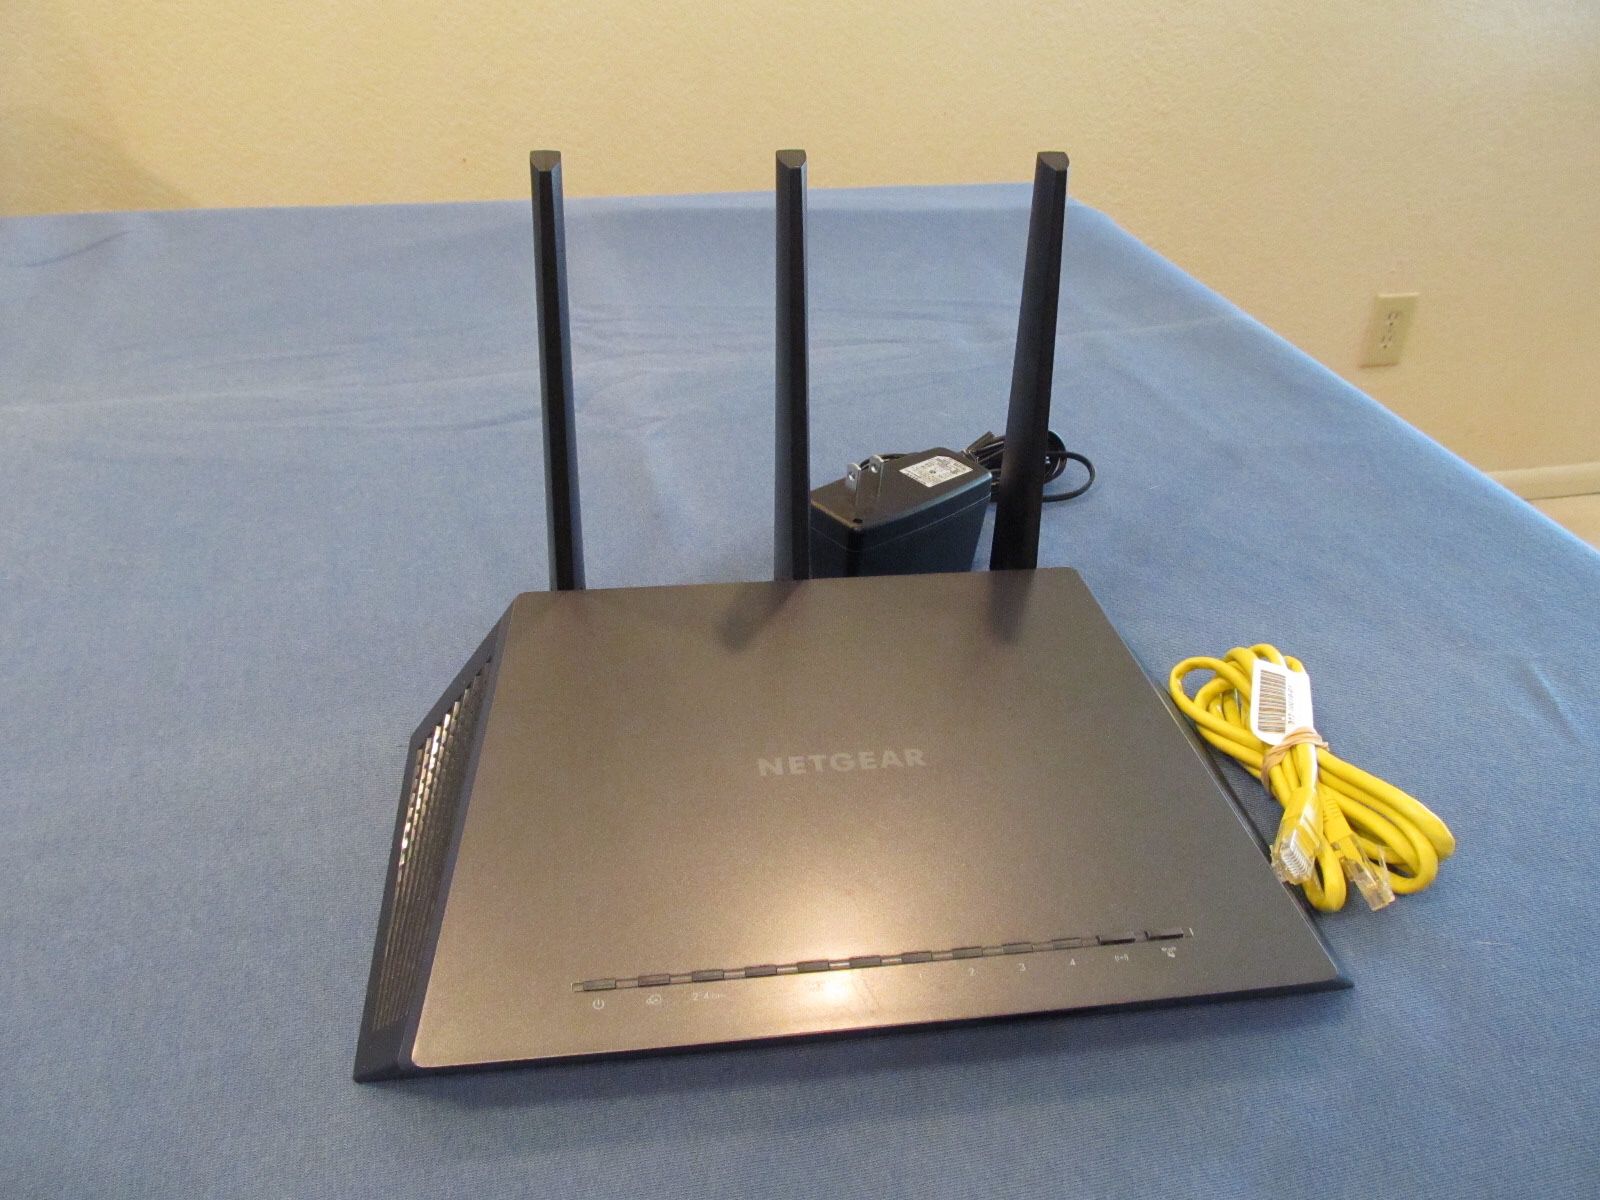 Netgear Nighthawk R6900 WiFi Router 